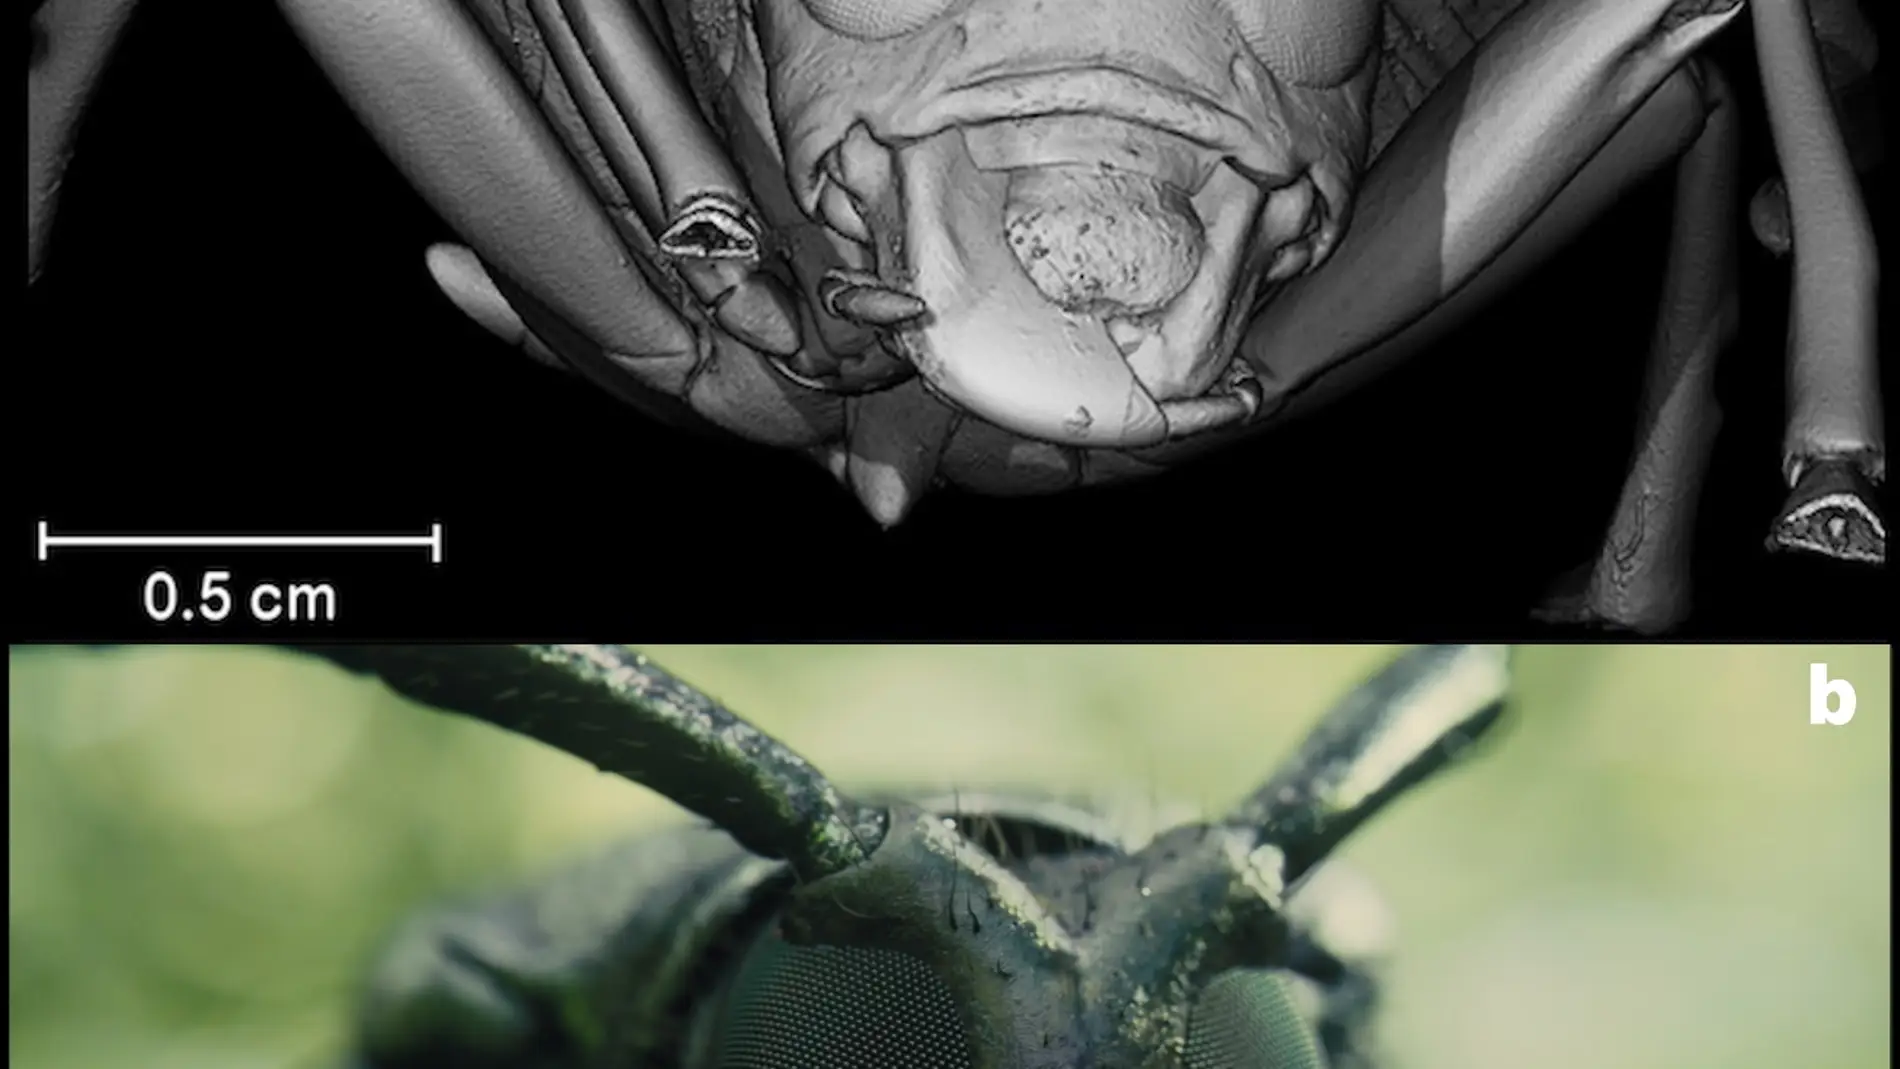 La pelicula Blade Runner 2049 uso escarabajos en 3D realizados en Espana